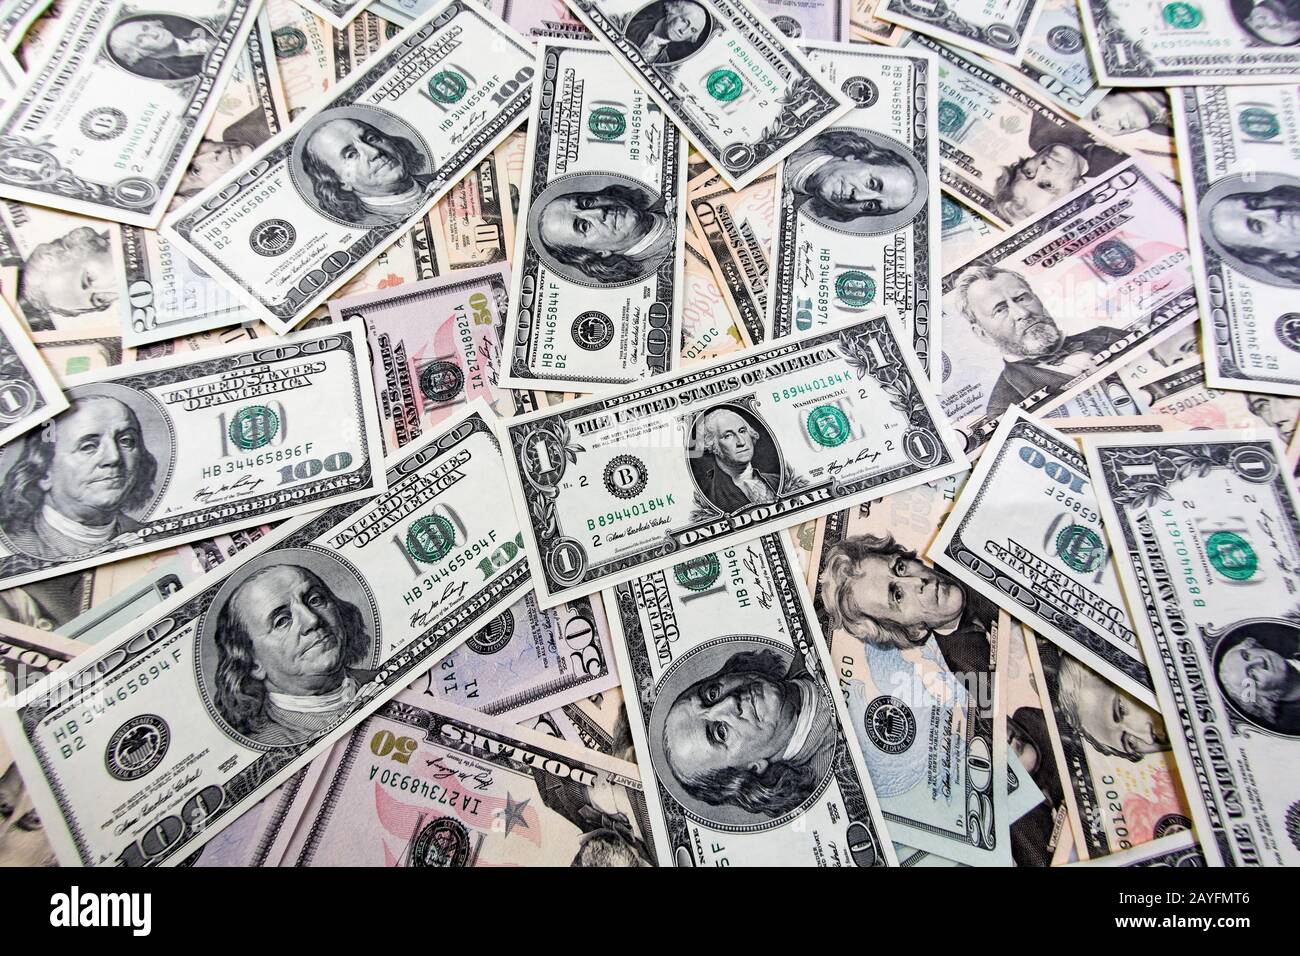 100 Dollar geldscheine, US-Dollar, US-Dollars, Stock Photo